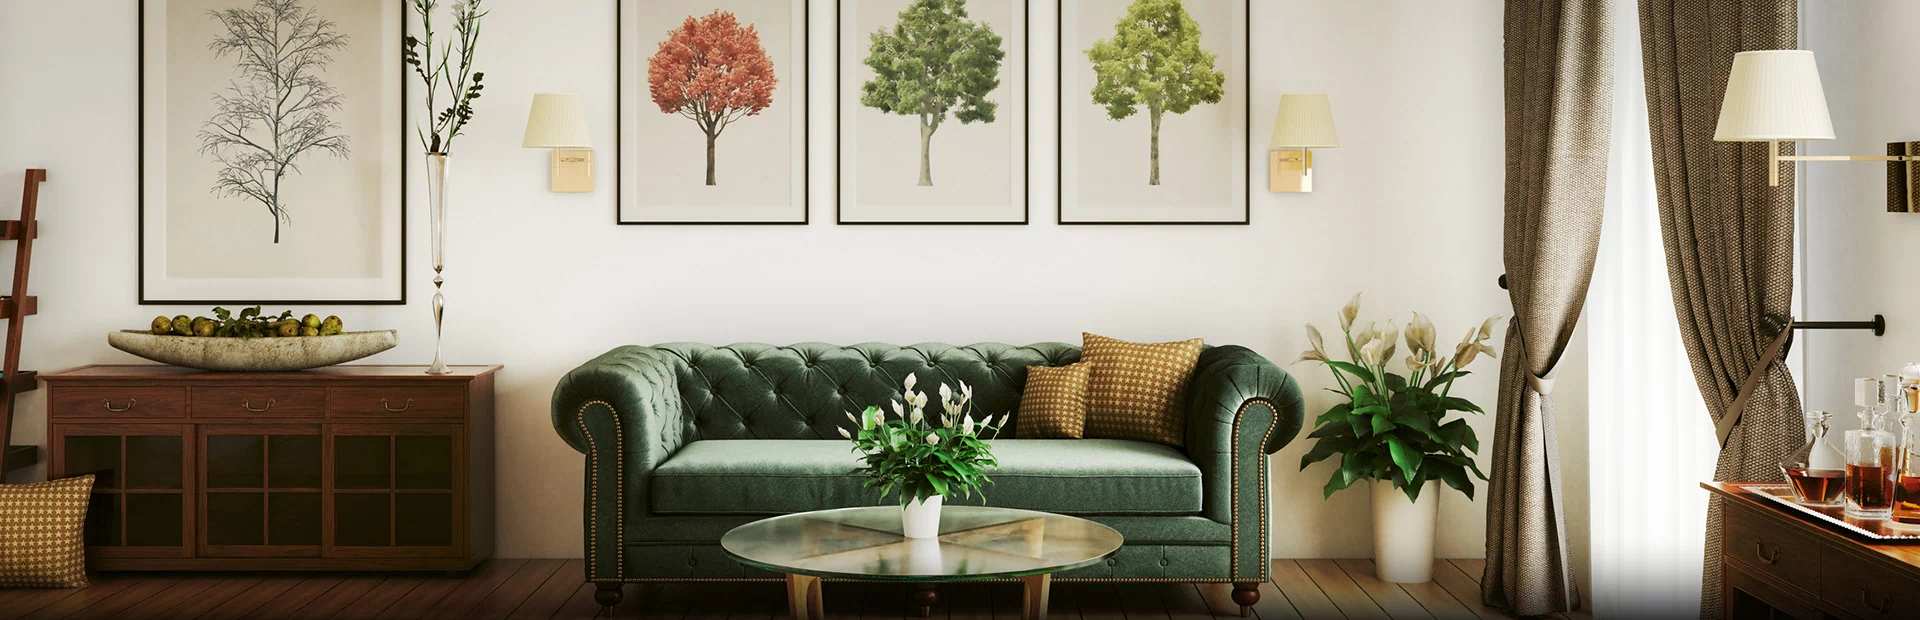 salon z zieloną sofą i obrazami